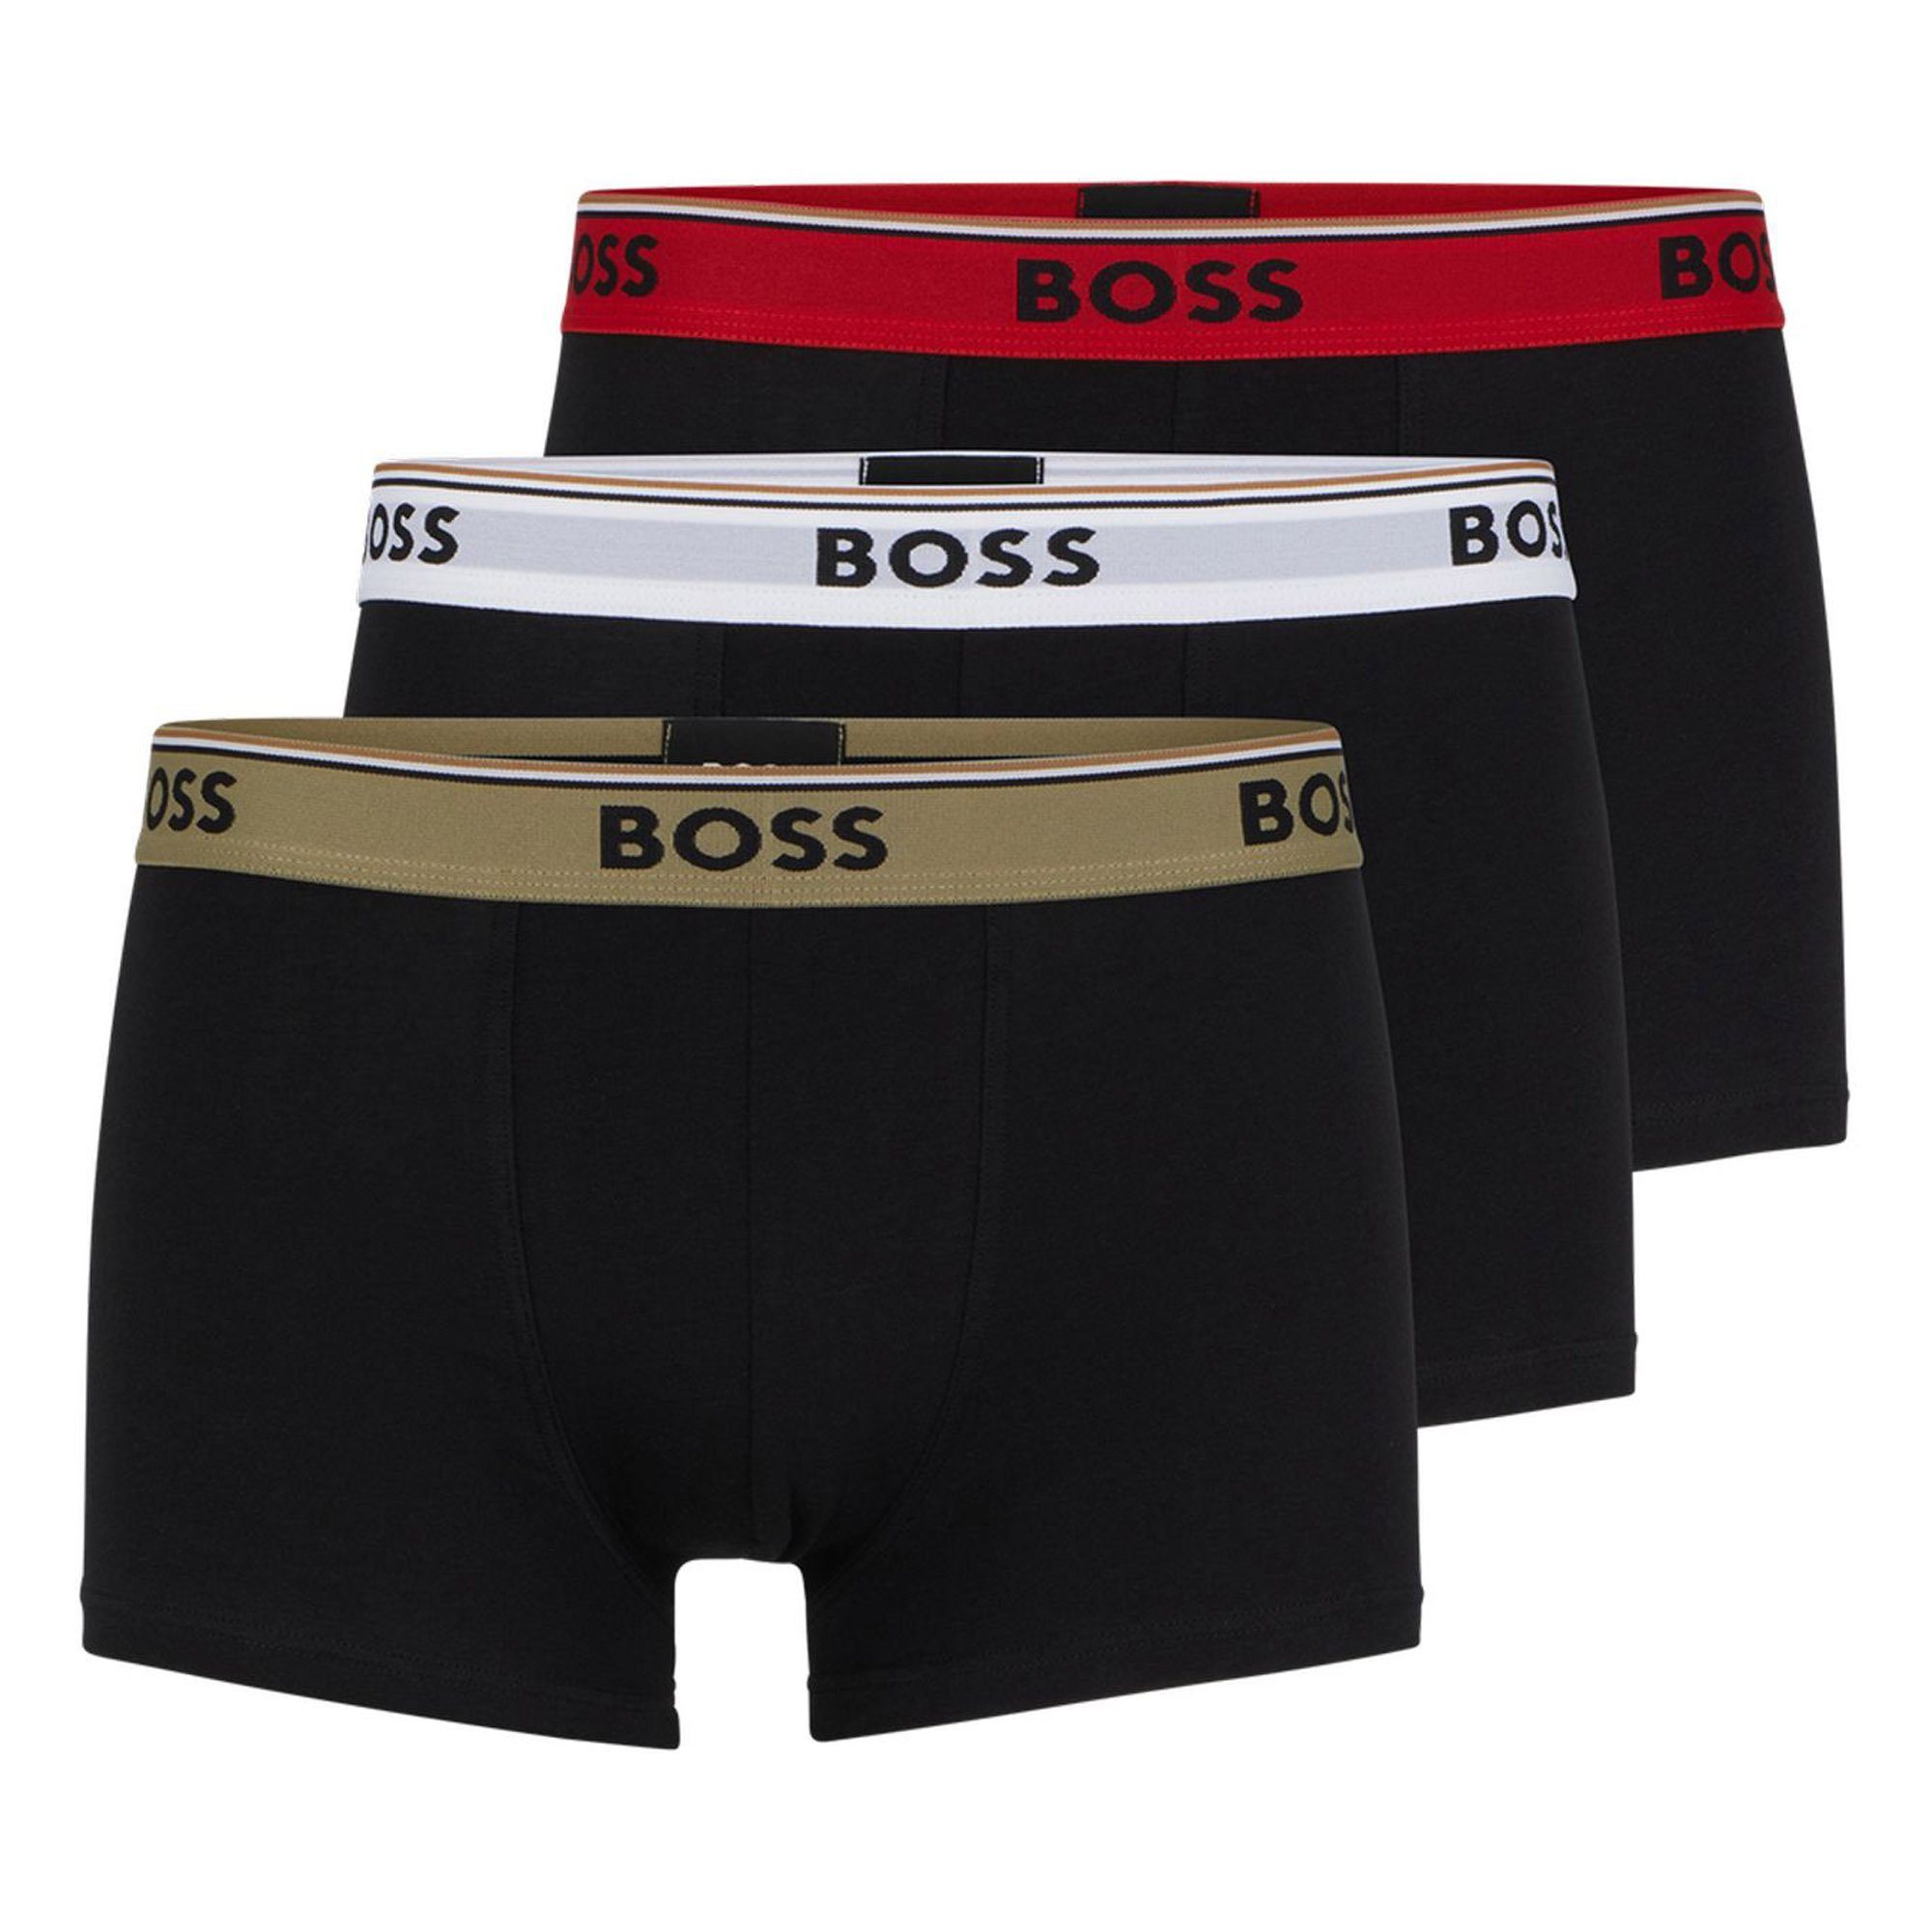 Power, - BOSS Unterwäsche Pack 3er Trunks, Schwarz/Olive/Rot/Weiß Boxer Herren